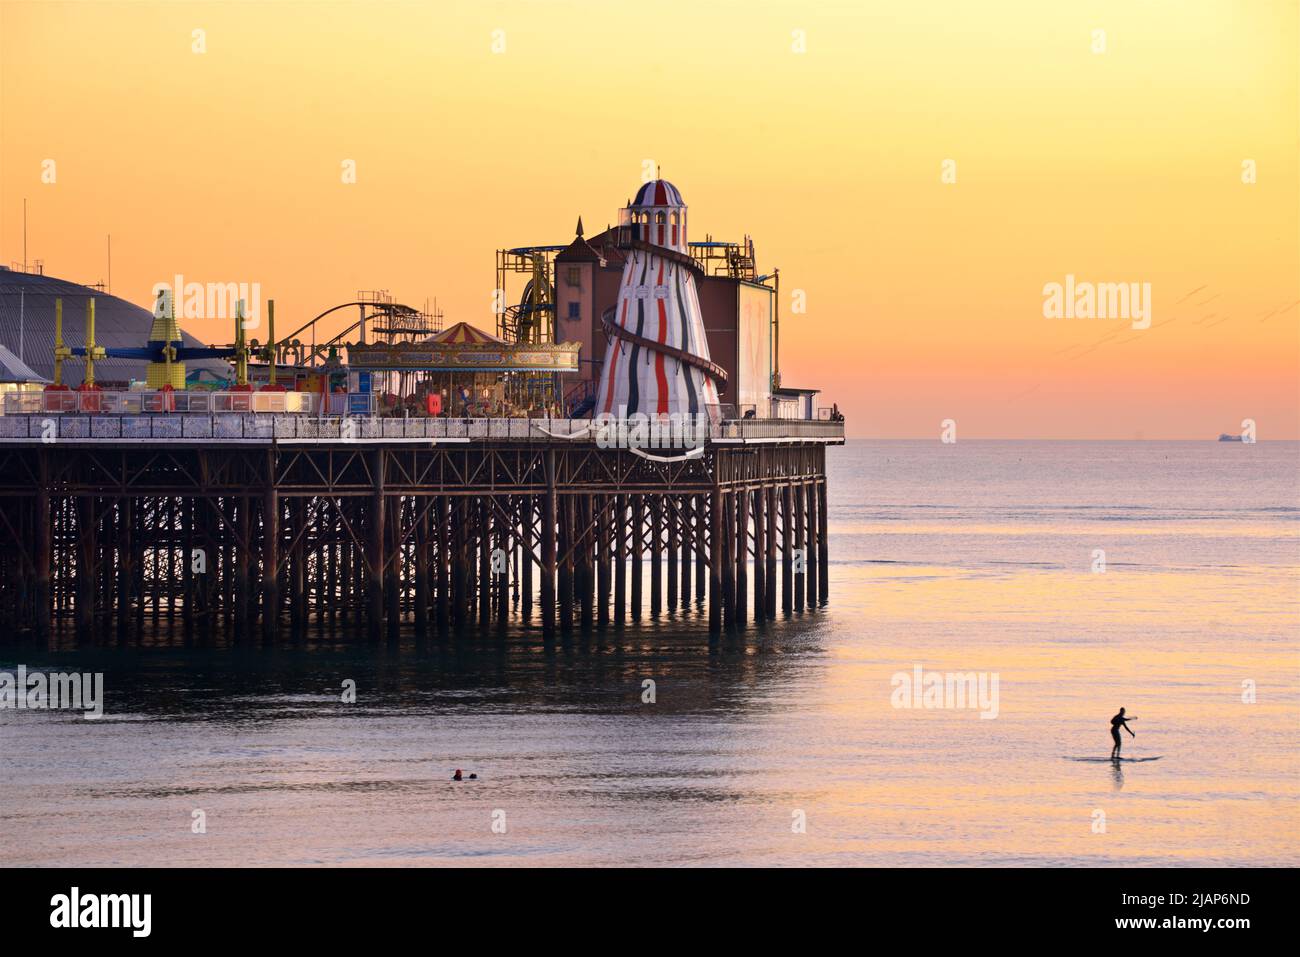 Brighton's Palace Pier o BRIGHTON PIER. Brighton & Hove, Sussex, Inglaterra, Reino Unido. Fotografiado al atardecer con el esqueleto del heléter y diversiones. Paddleboarder en primer plano Foto de stock